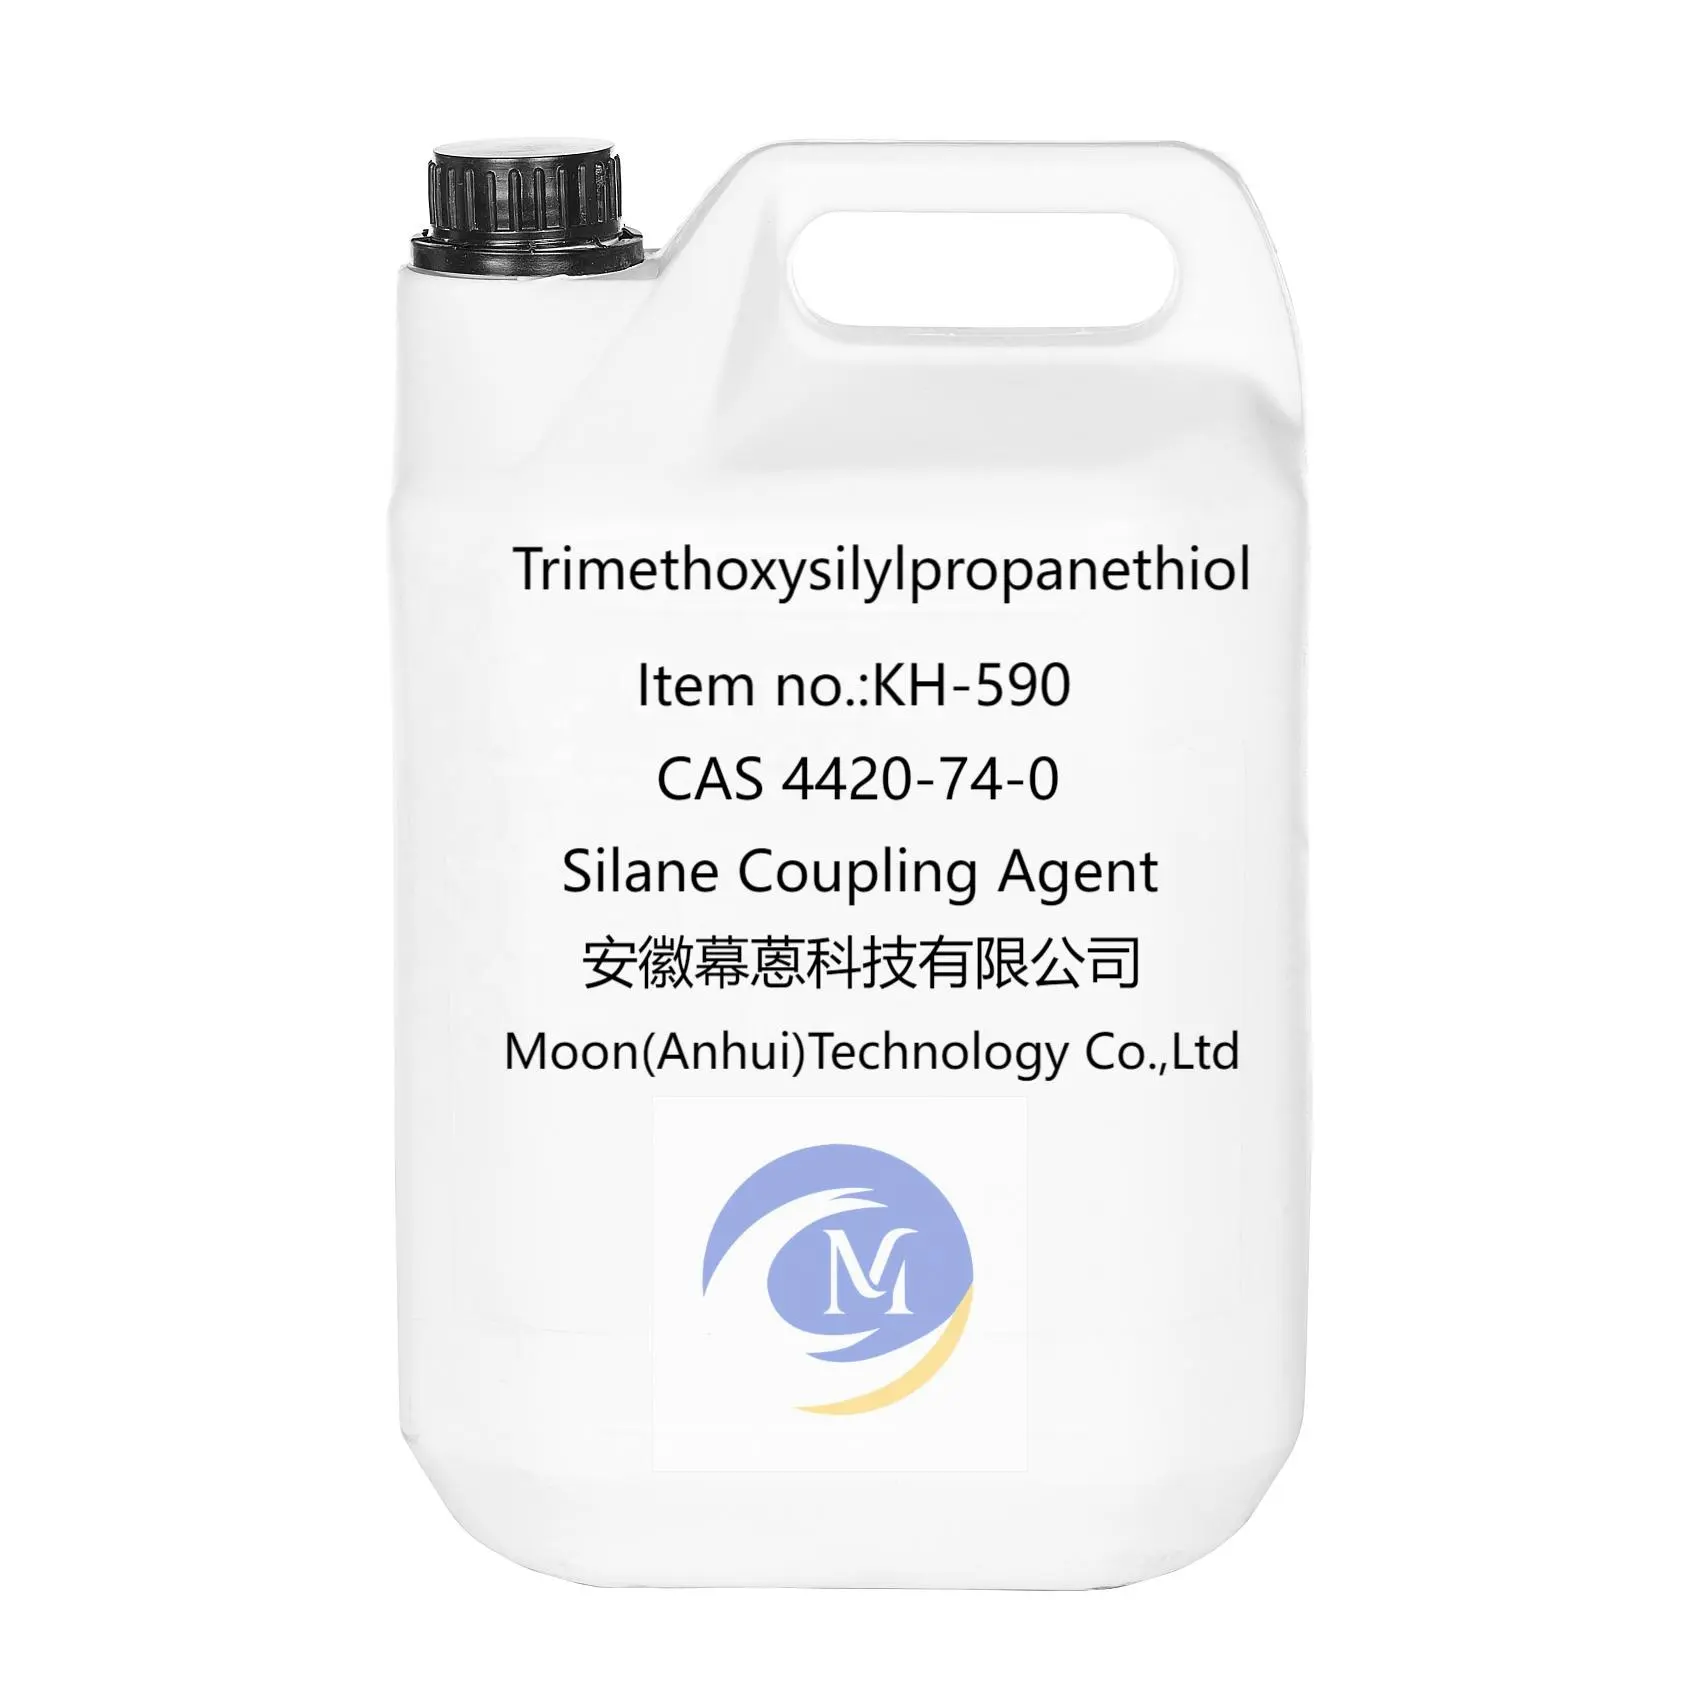 توريد المُصنع الصيني عامل السيلان المزود بـ trimethoxysilylpropanethiol KH-590 CAS 4420-74-0